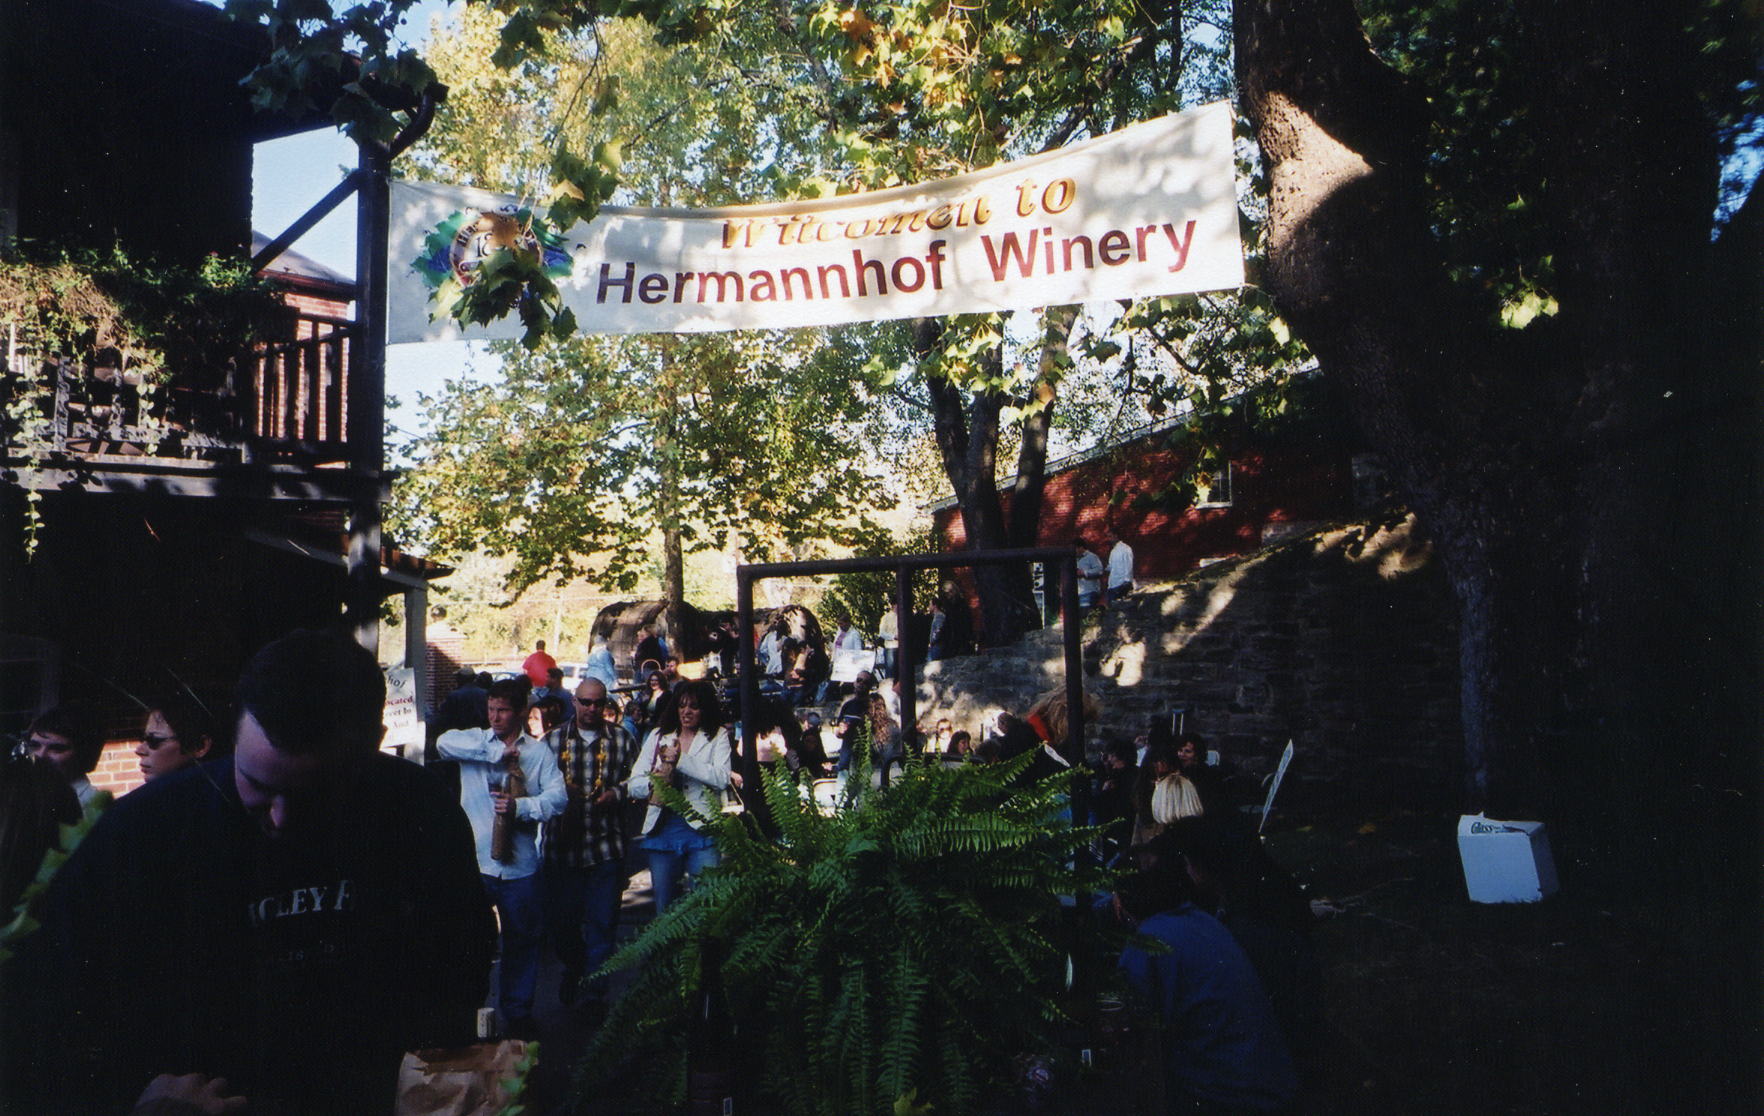 Hermannhoff Winery